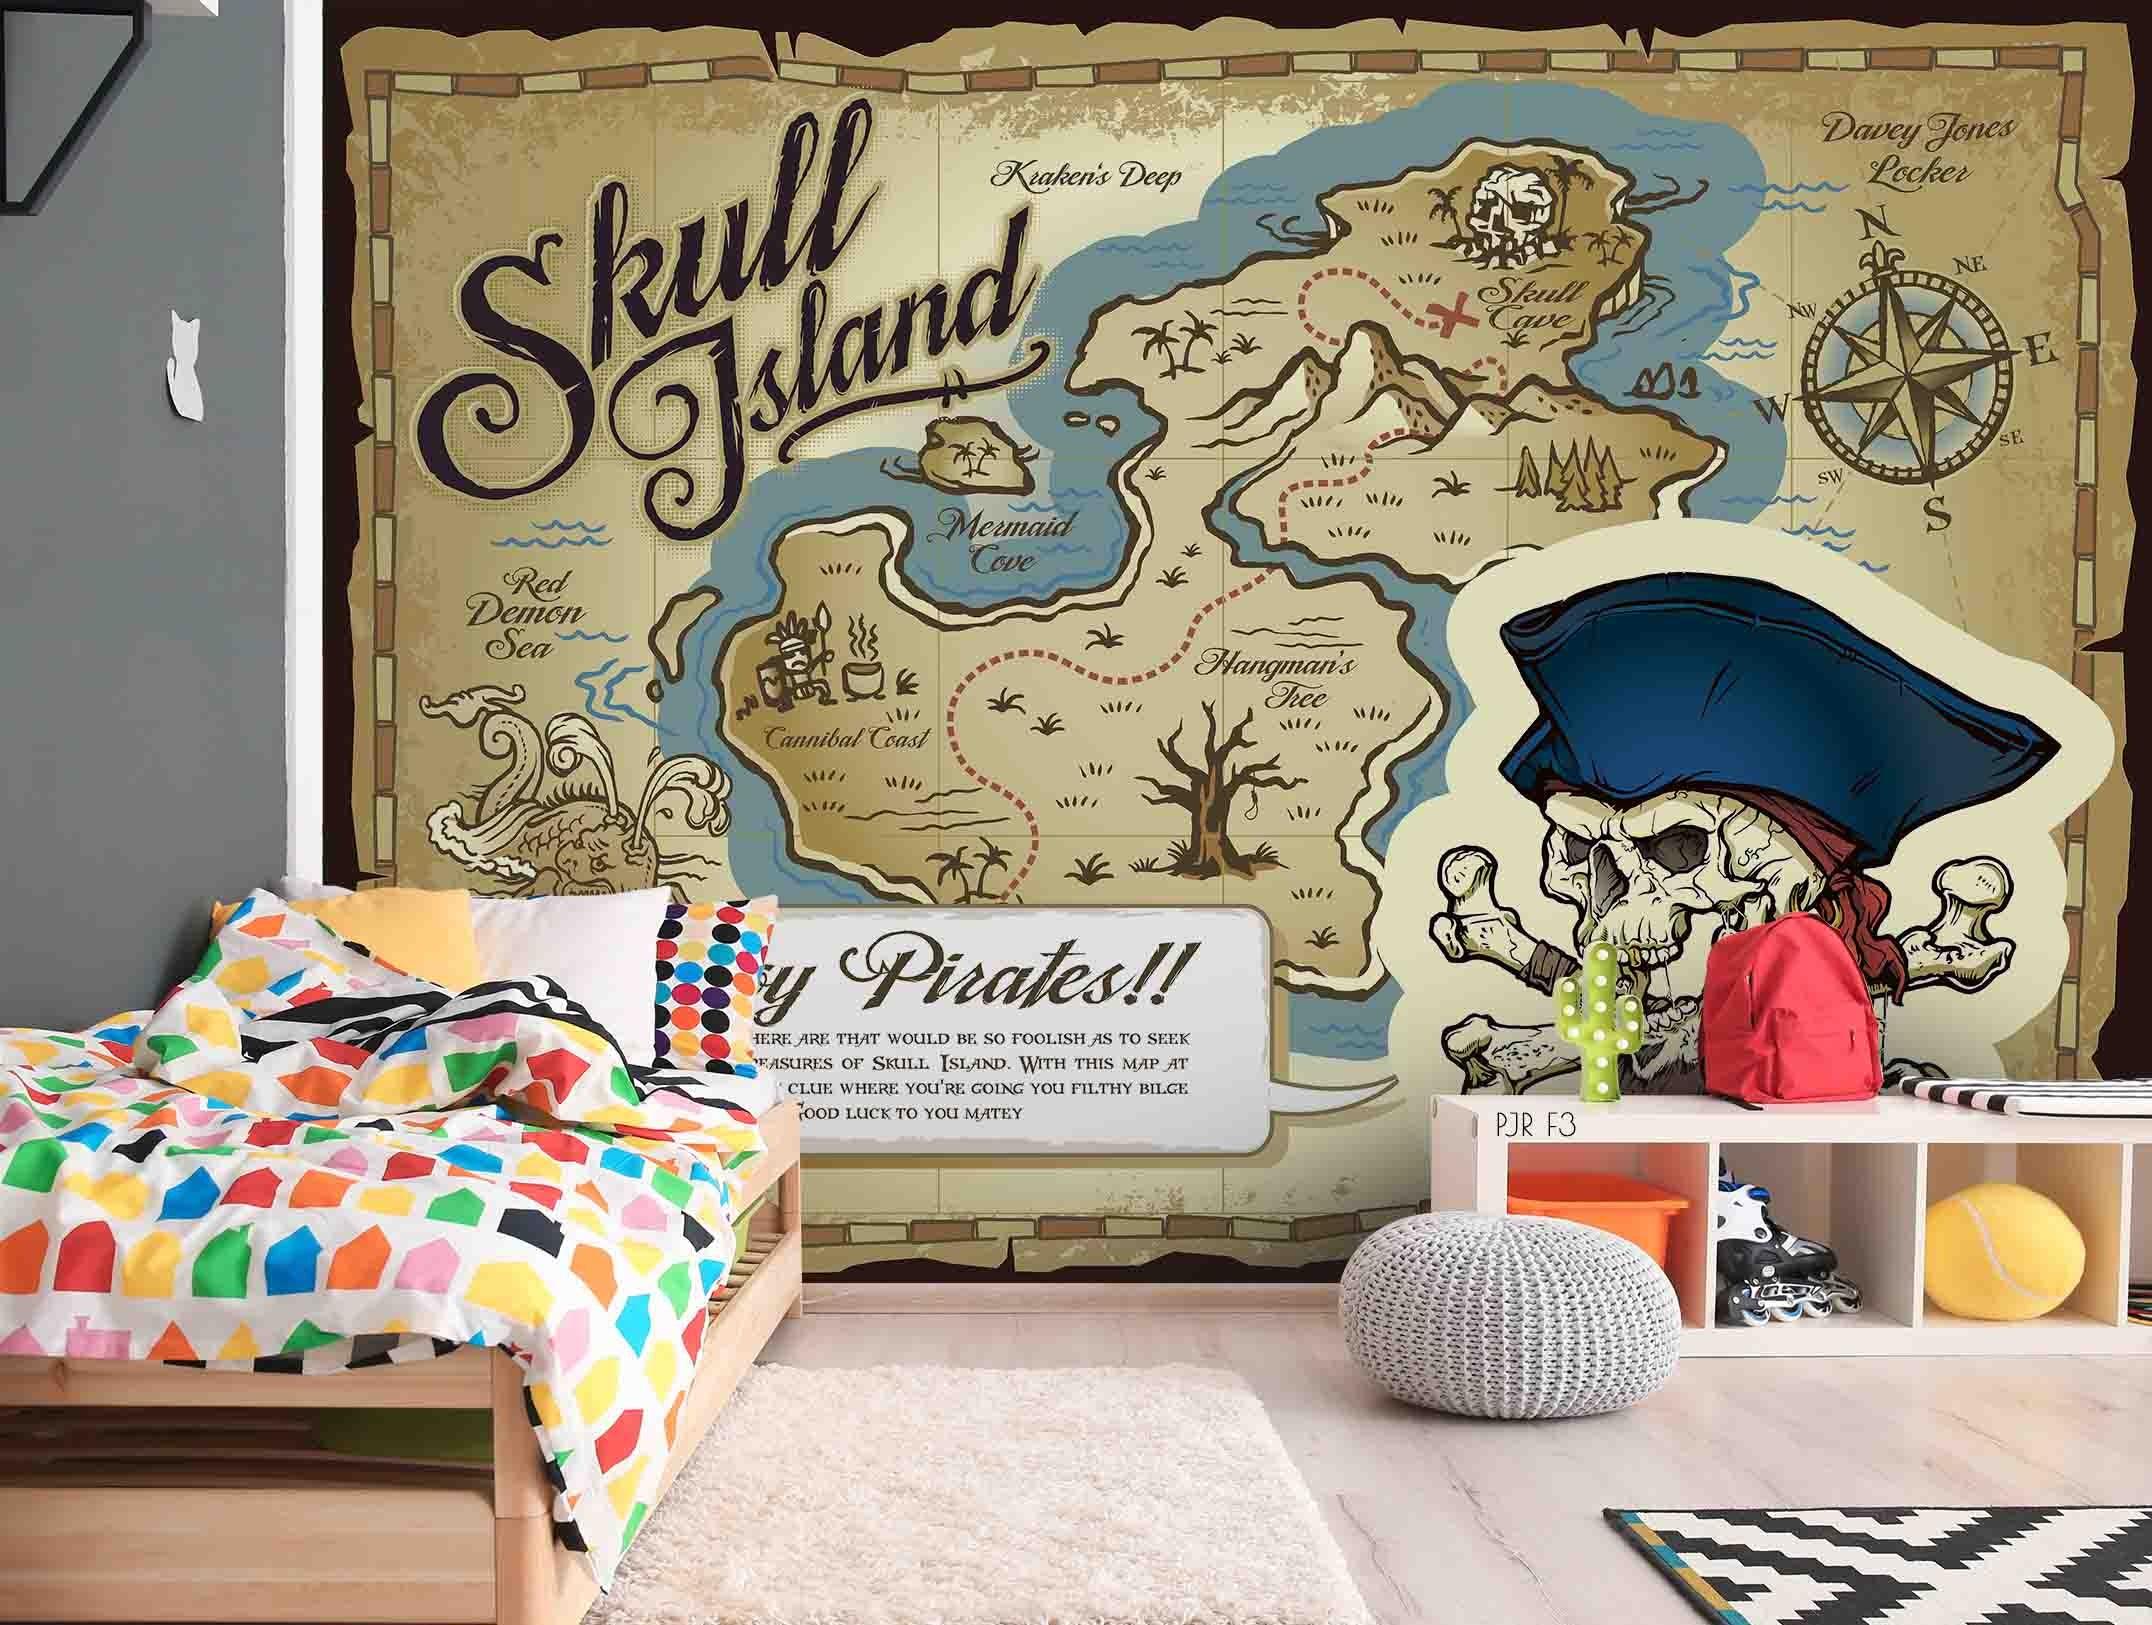 3D Pirate Skull Island Map Wall Mural Wallpaper LXL 767- Jess Art Decoration